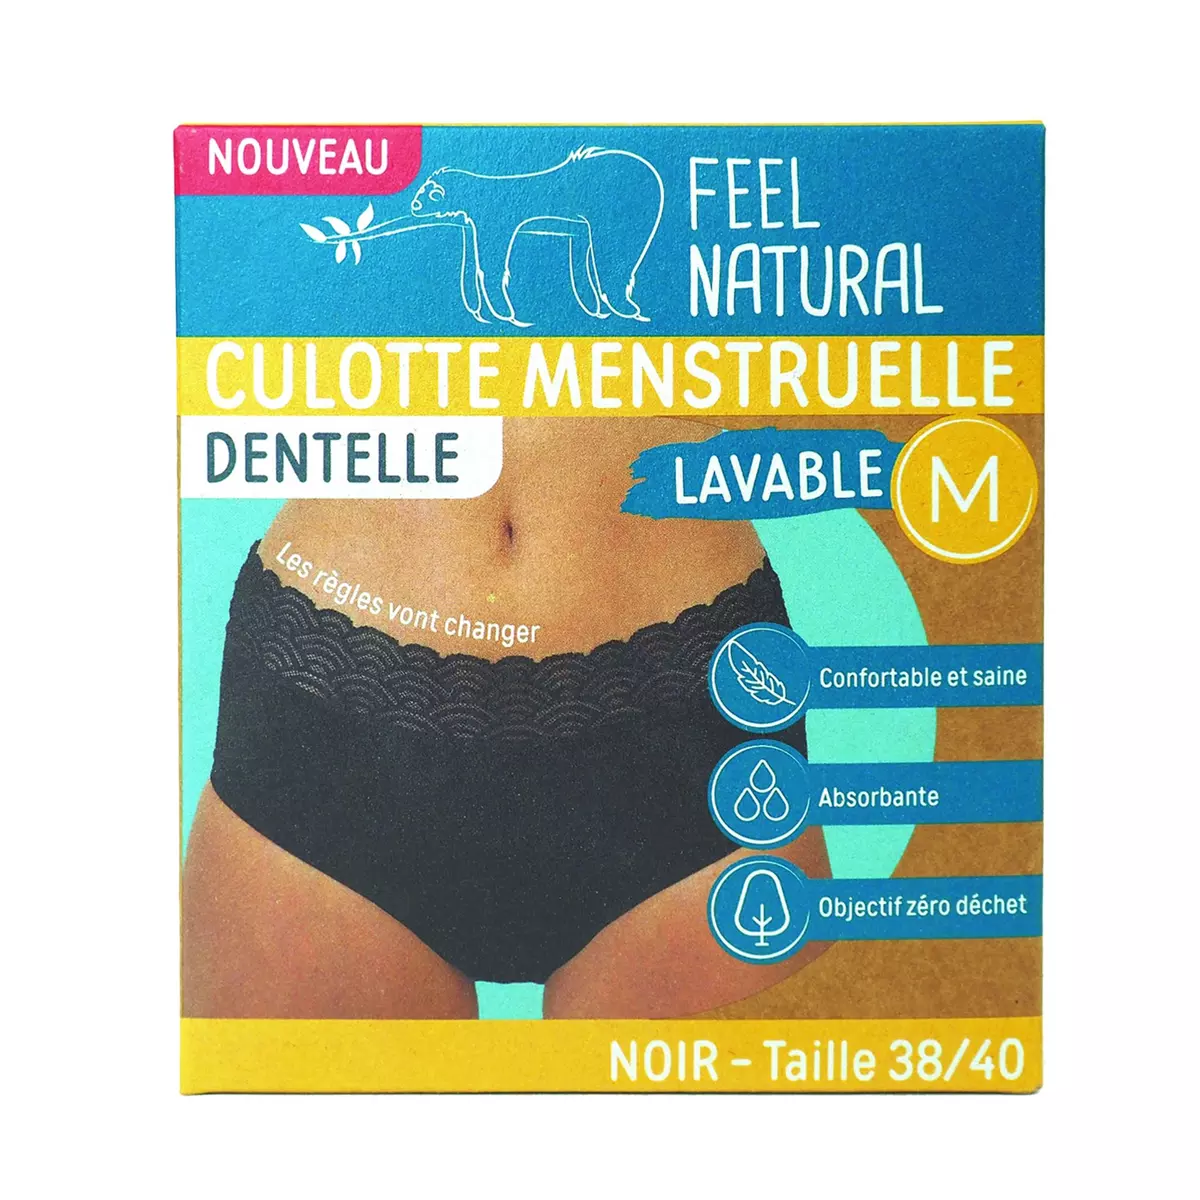 FEEL NATURAL Culotte menstruelle en dentelle noir lavable taille M 38-40 1 pièce